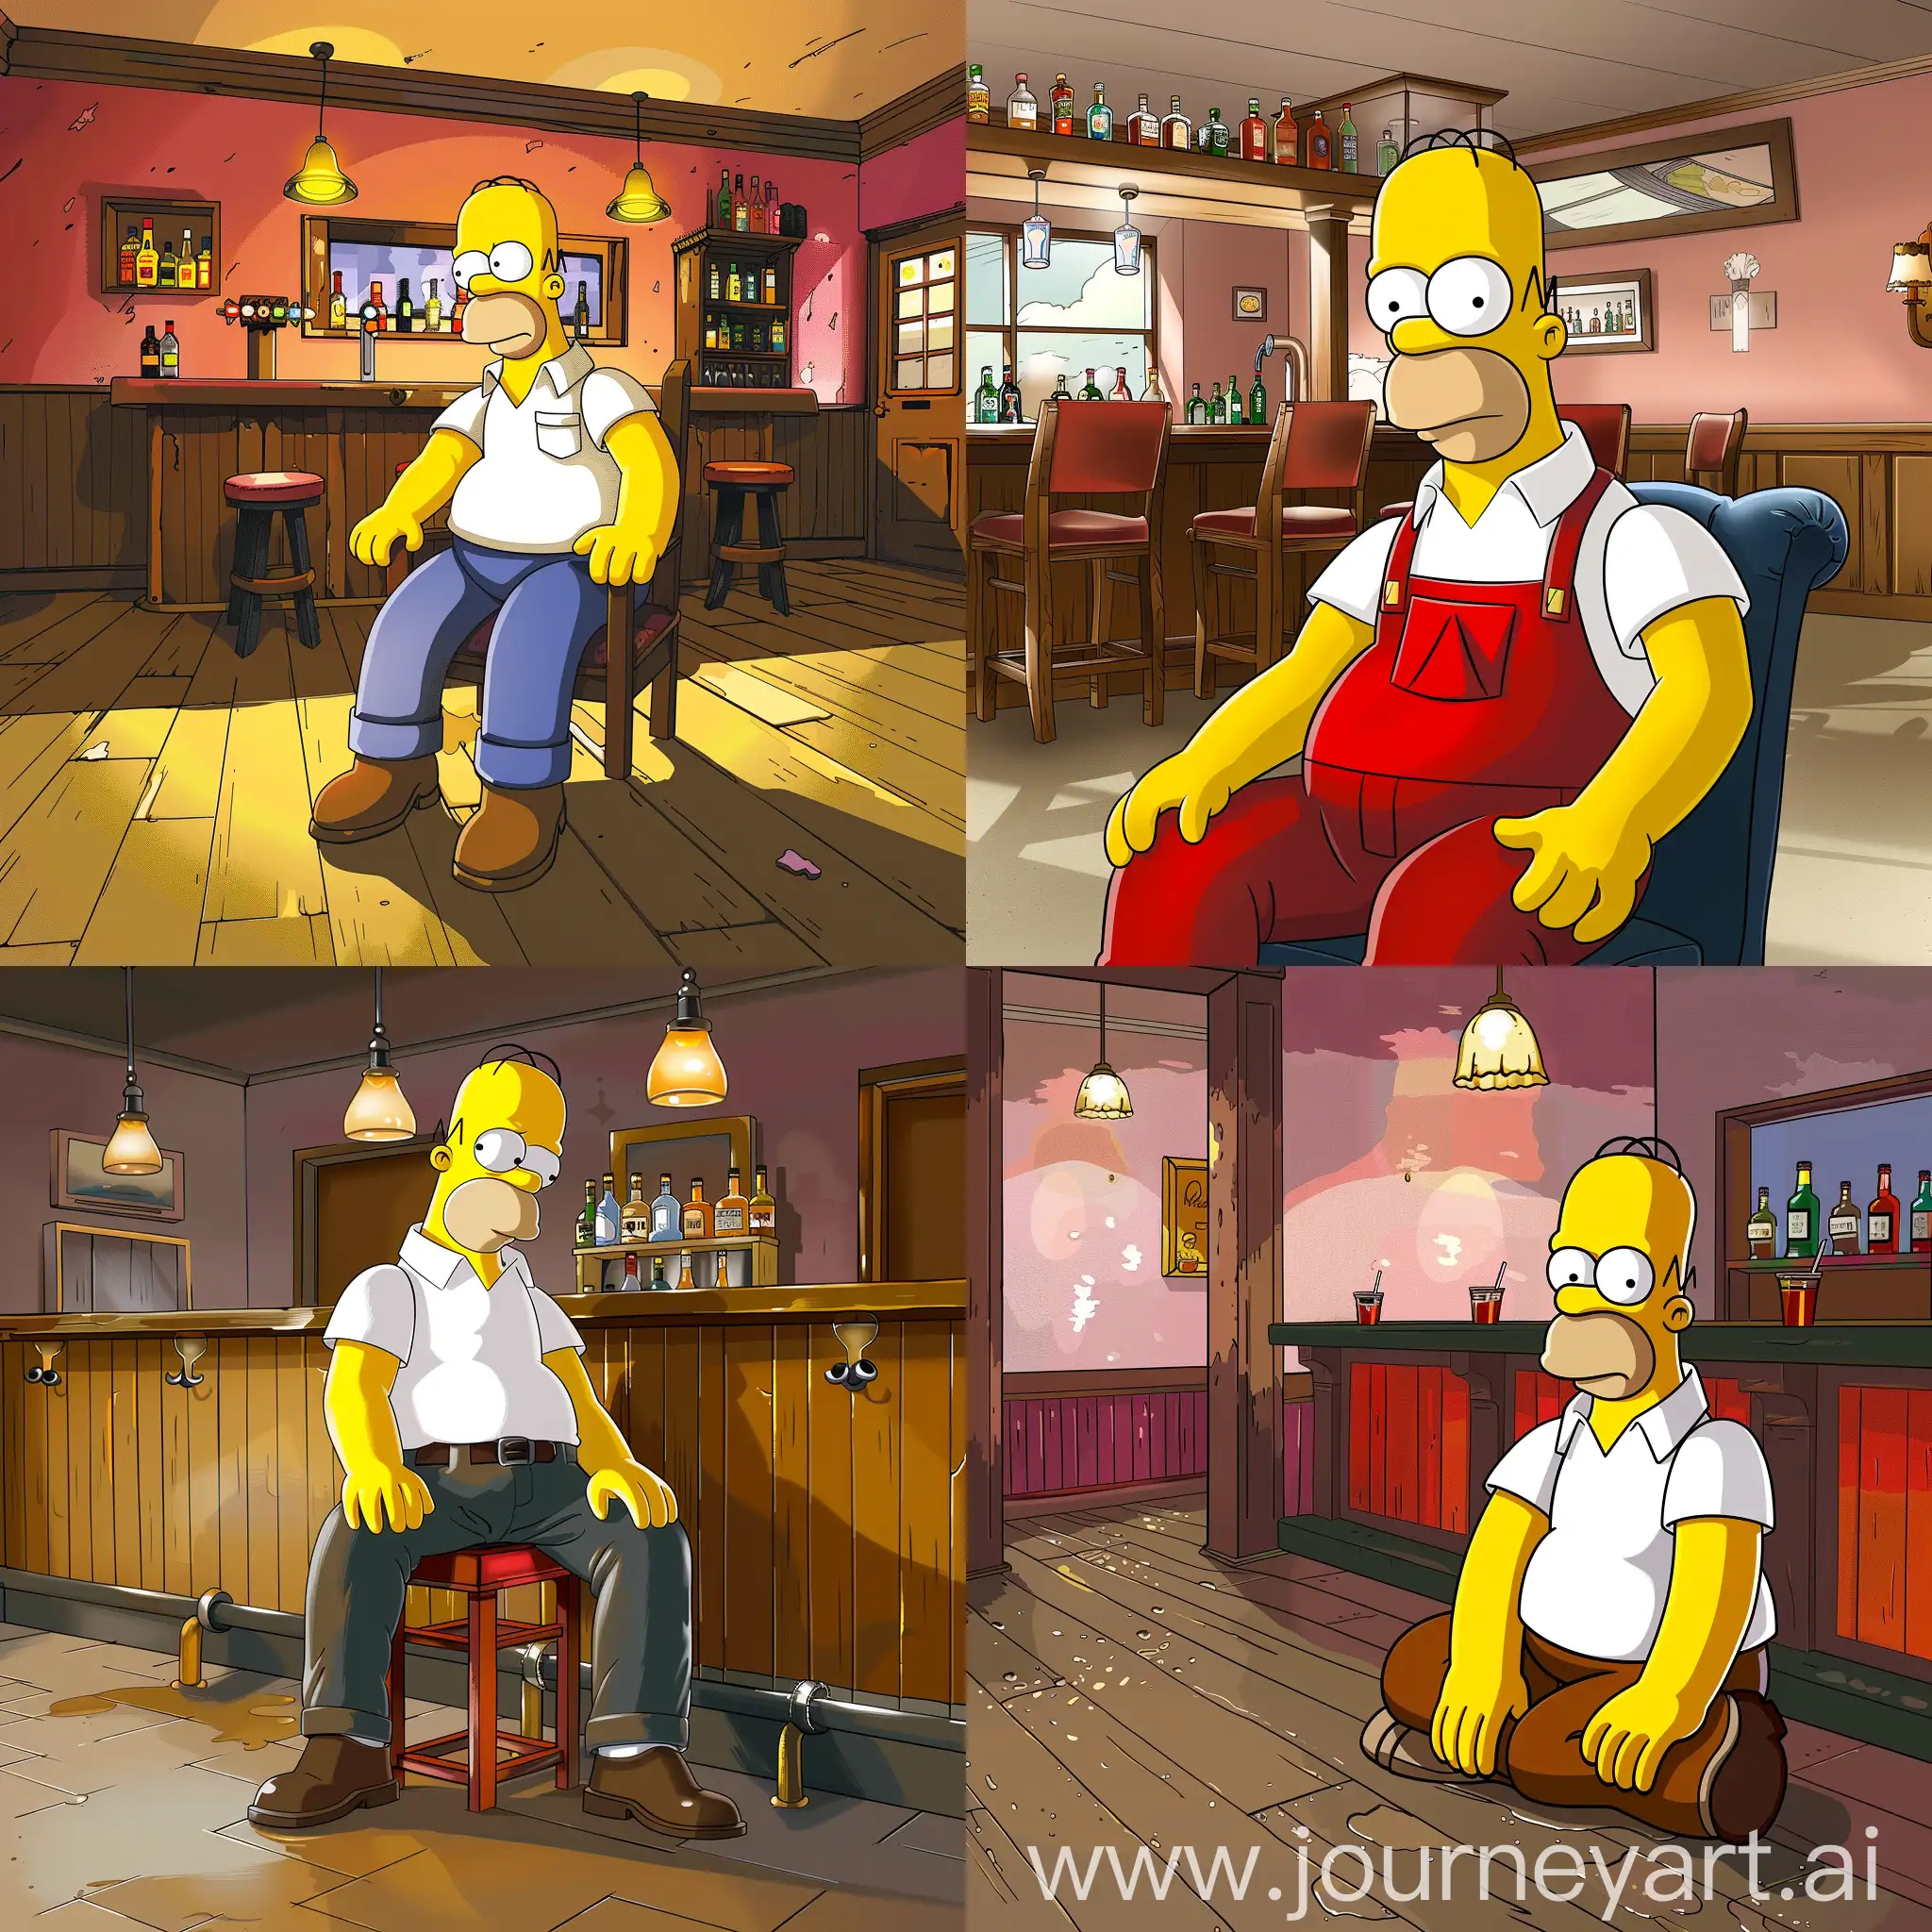 Гомер Симпсон сидит в баре, стиль оформления симпсон, мультик, супер детализация, гипер реализм, 8к, HDR, профессиональное освещение, острый фокус